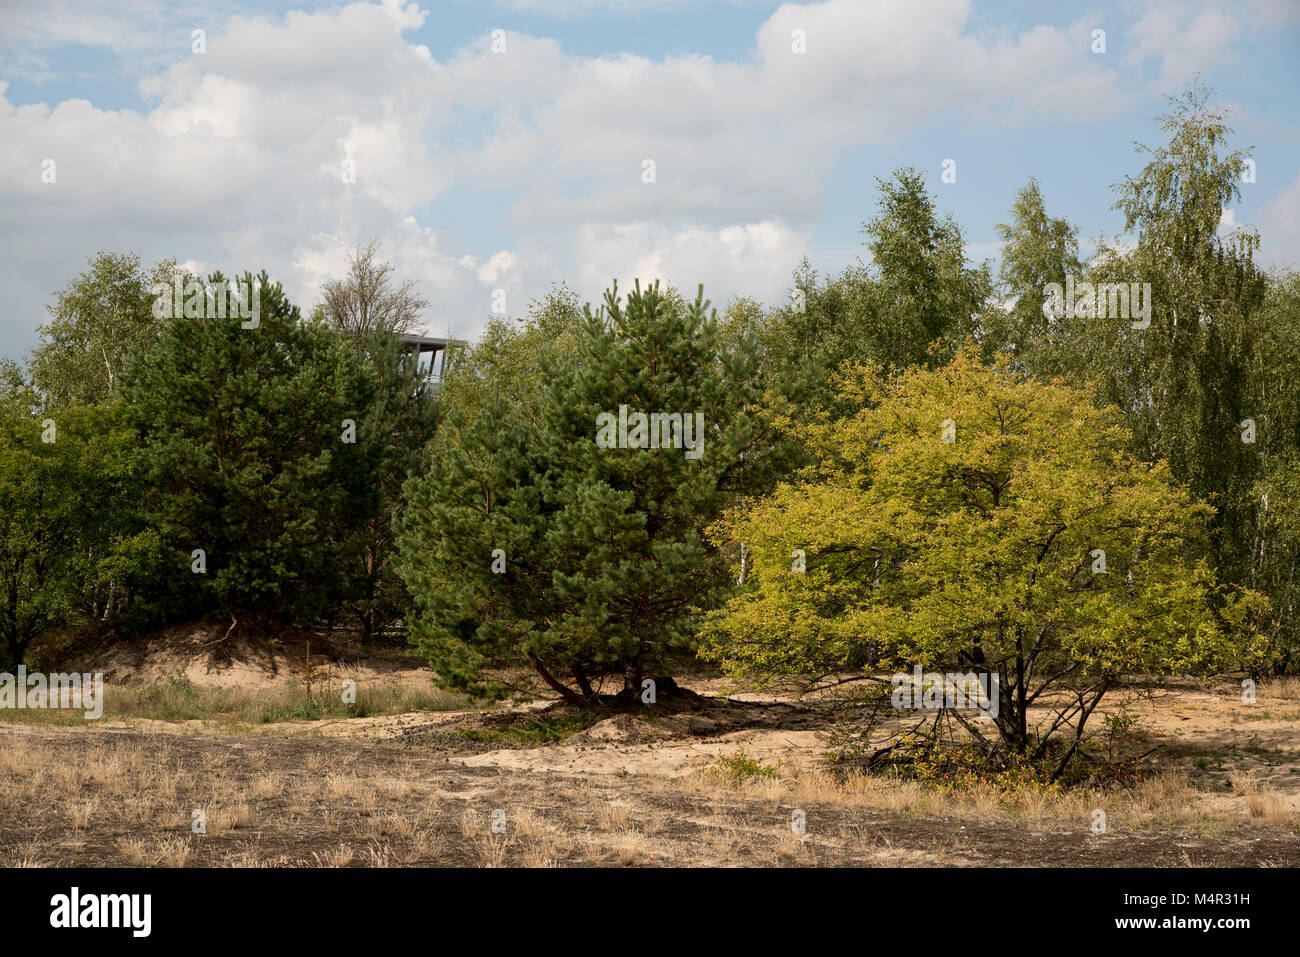 Schottischen Kiefern und Birken wachsen auf sandigen Boden in der Wildnis Lieberose Heide. In diesem größtenteils offene Landschaft wurde durch ein Buschfeuer 1942 erstellt und wurde Stockfoto